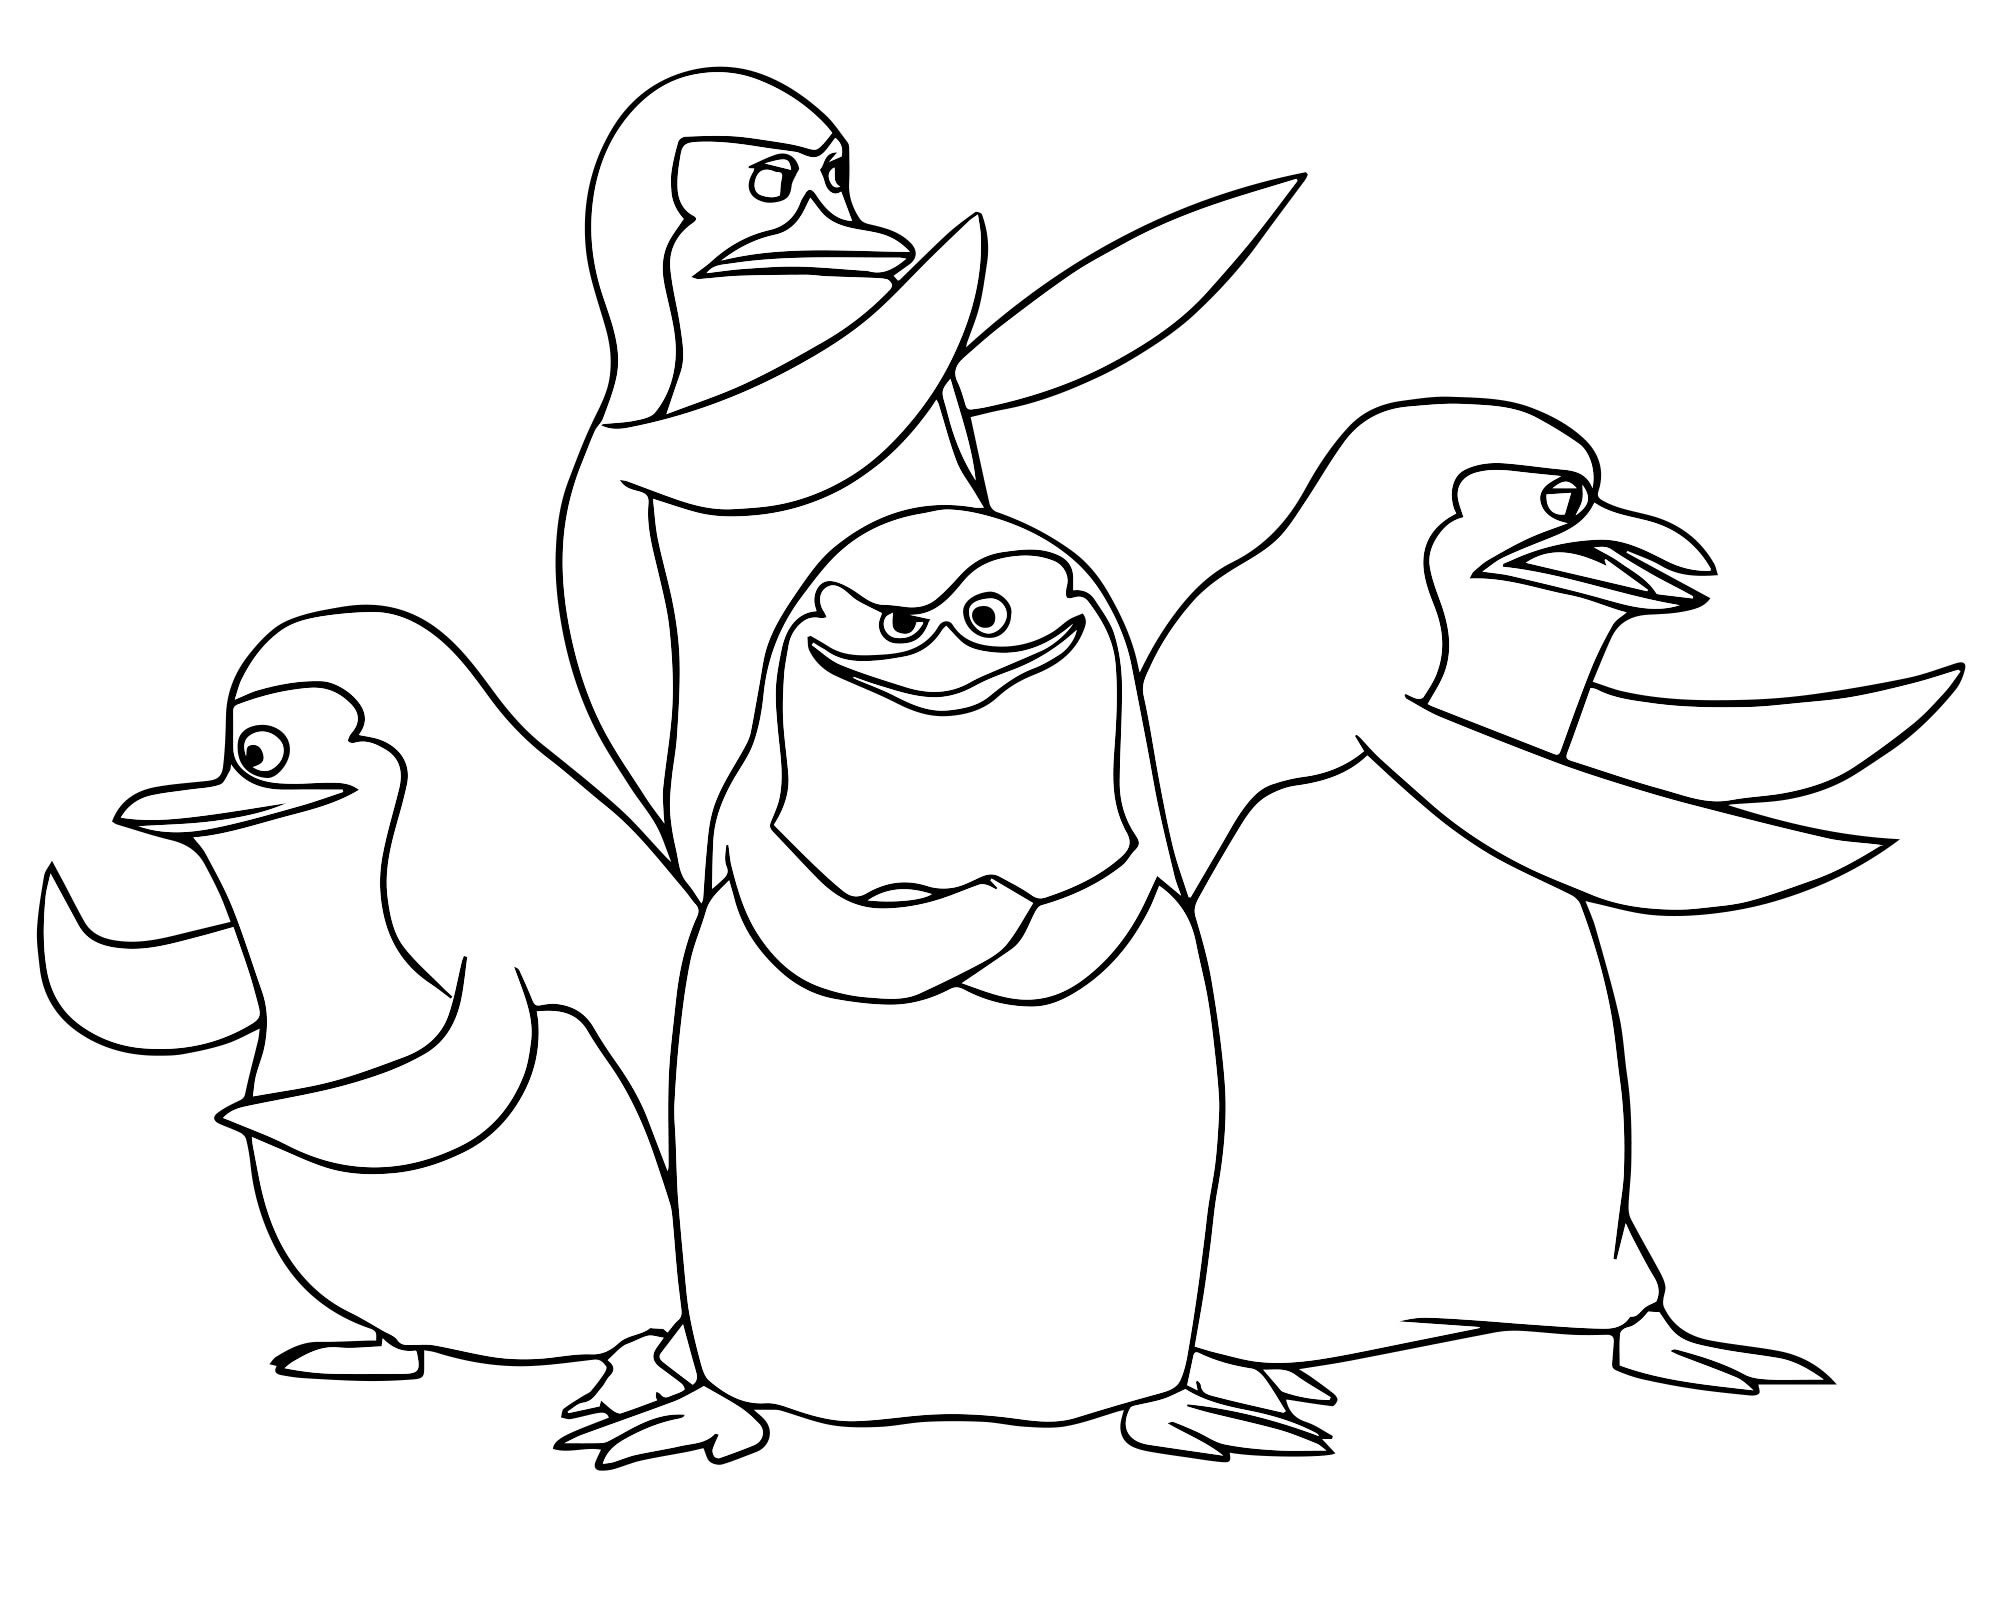 Пингвины из Мадагаскар раскраска для детей